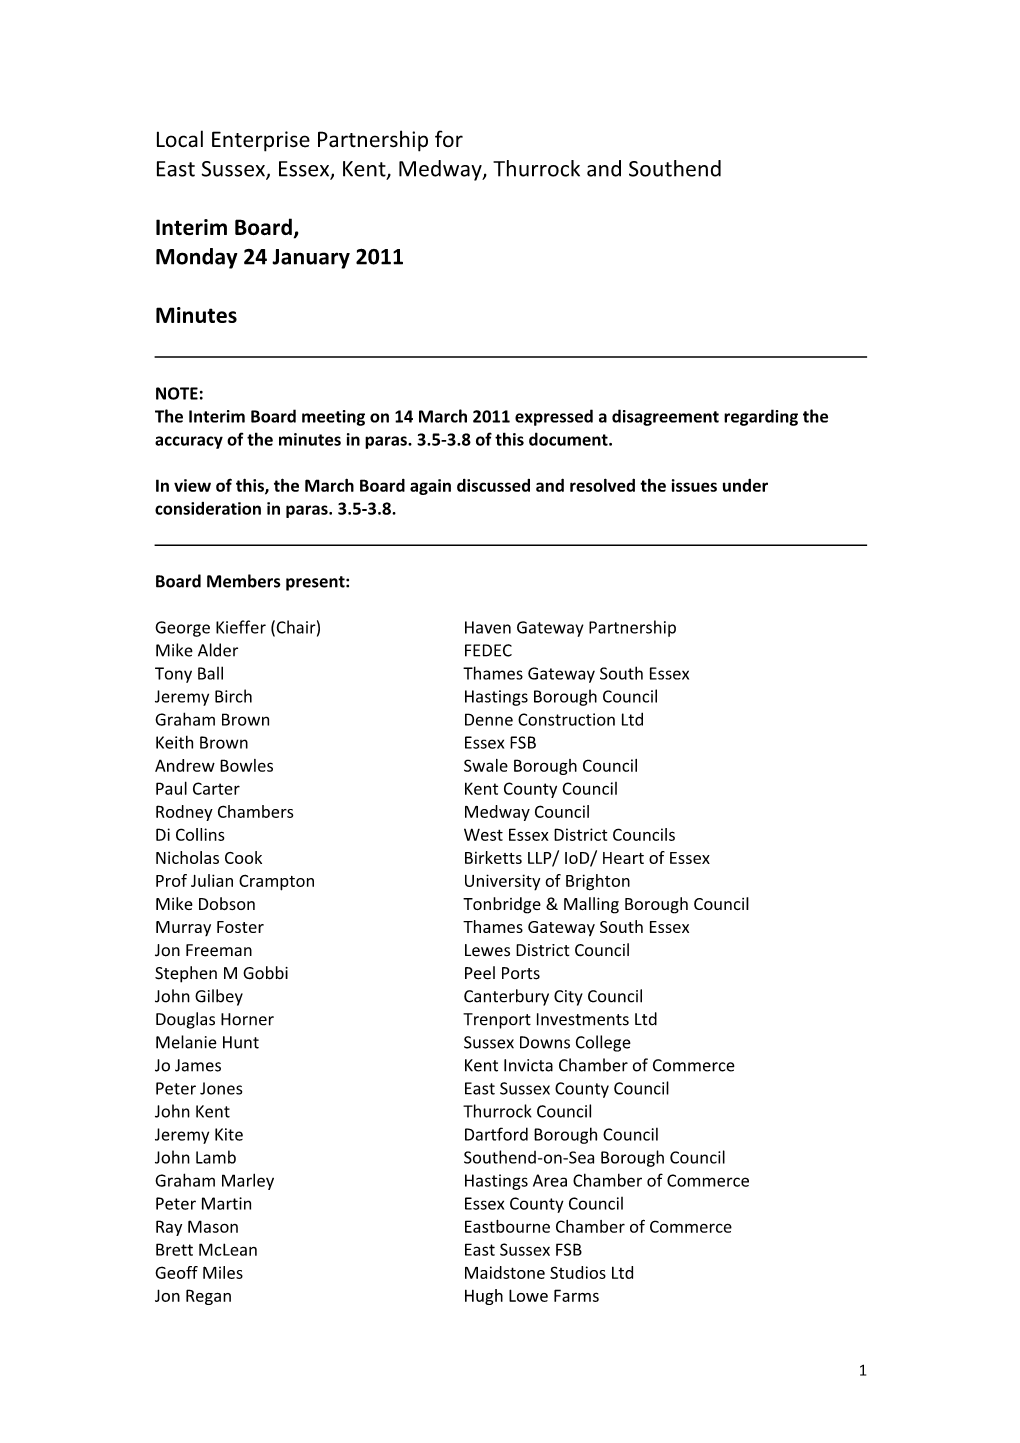 LEP Interim Board - Jan 2011- Minutes